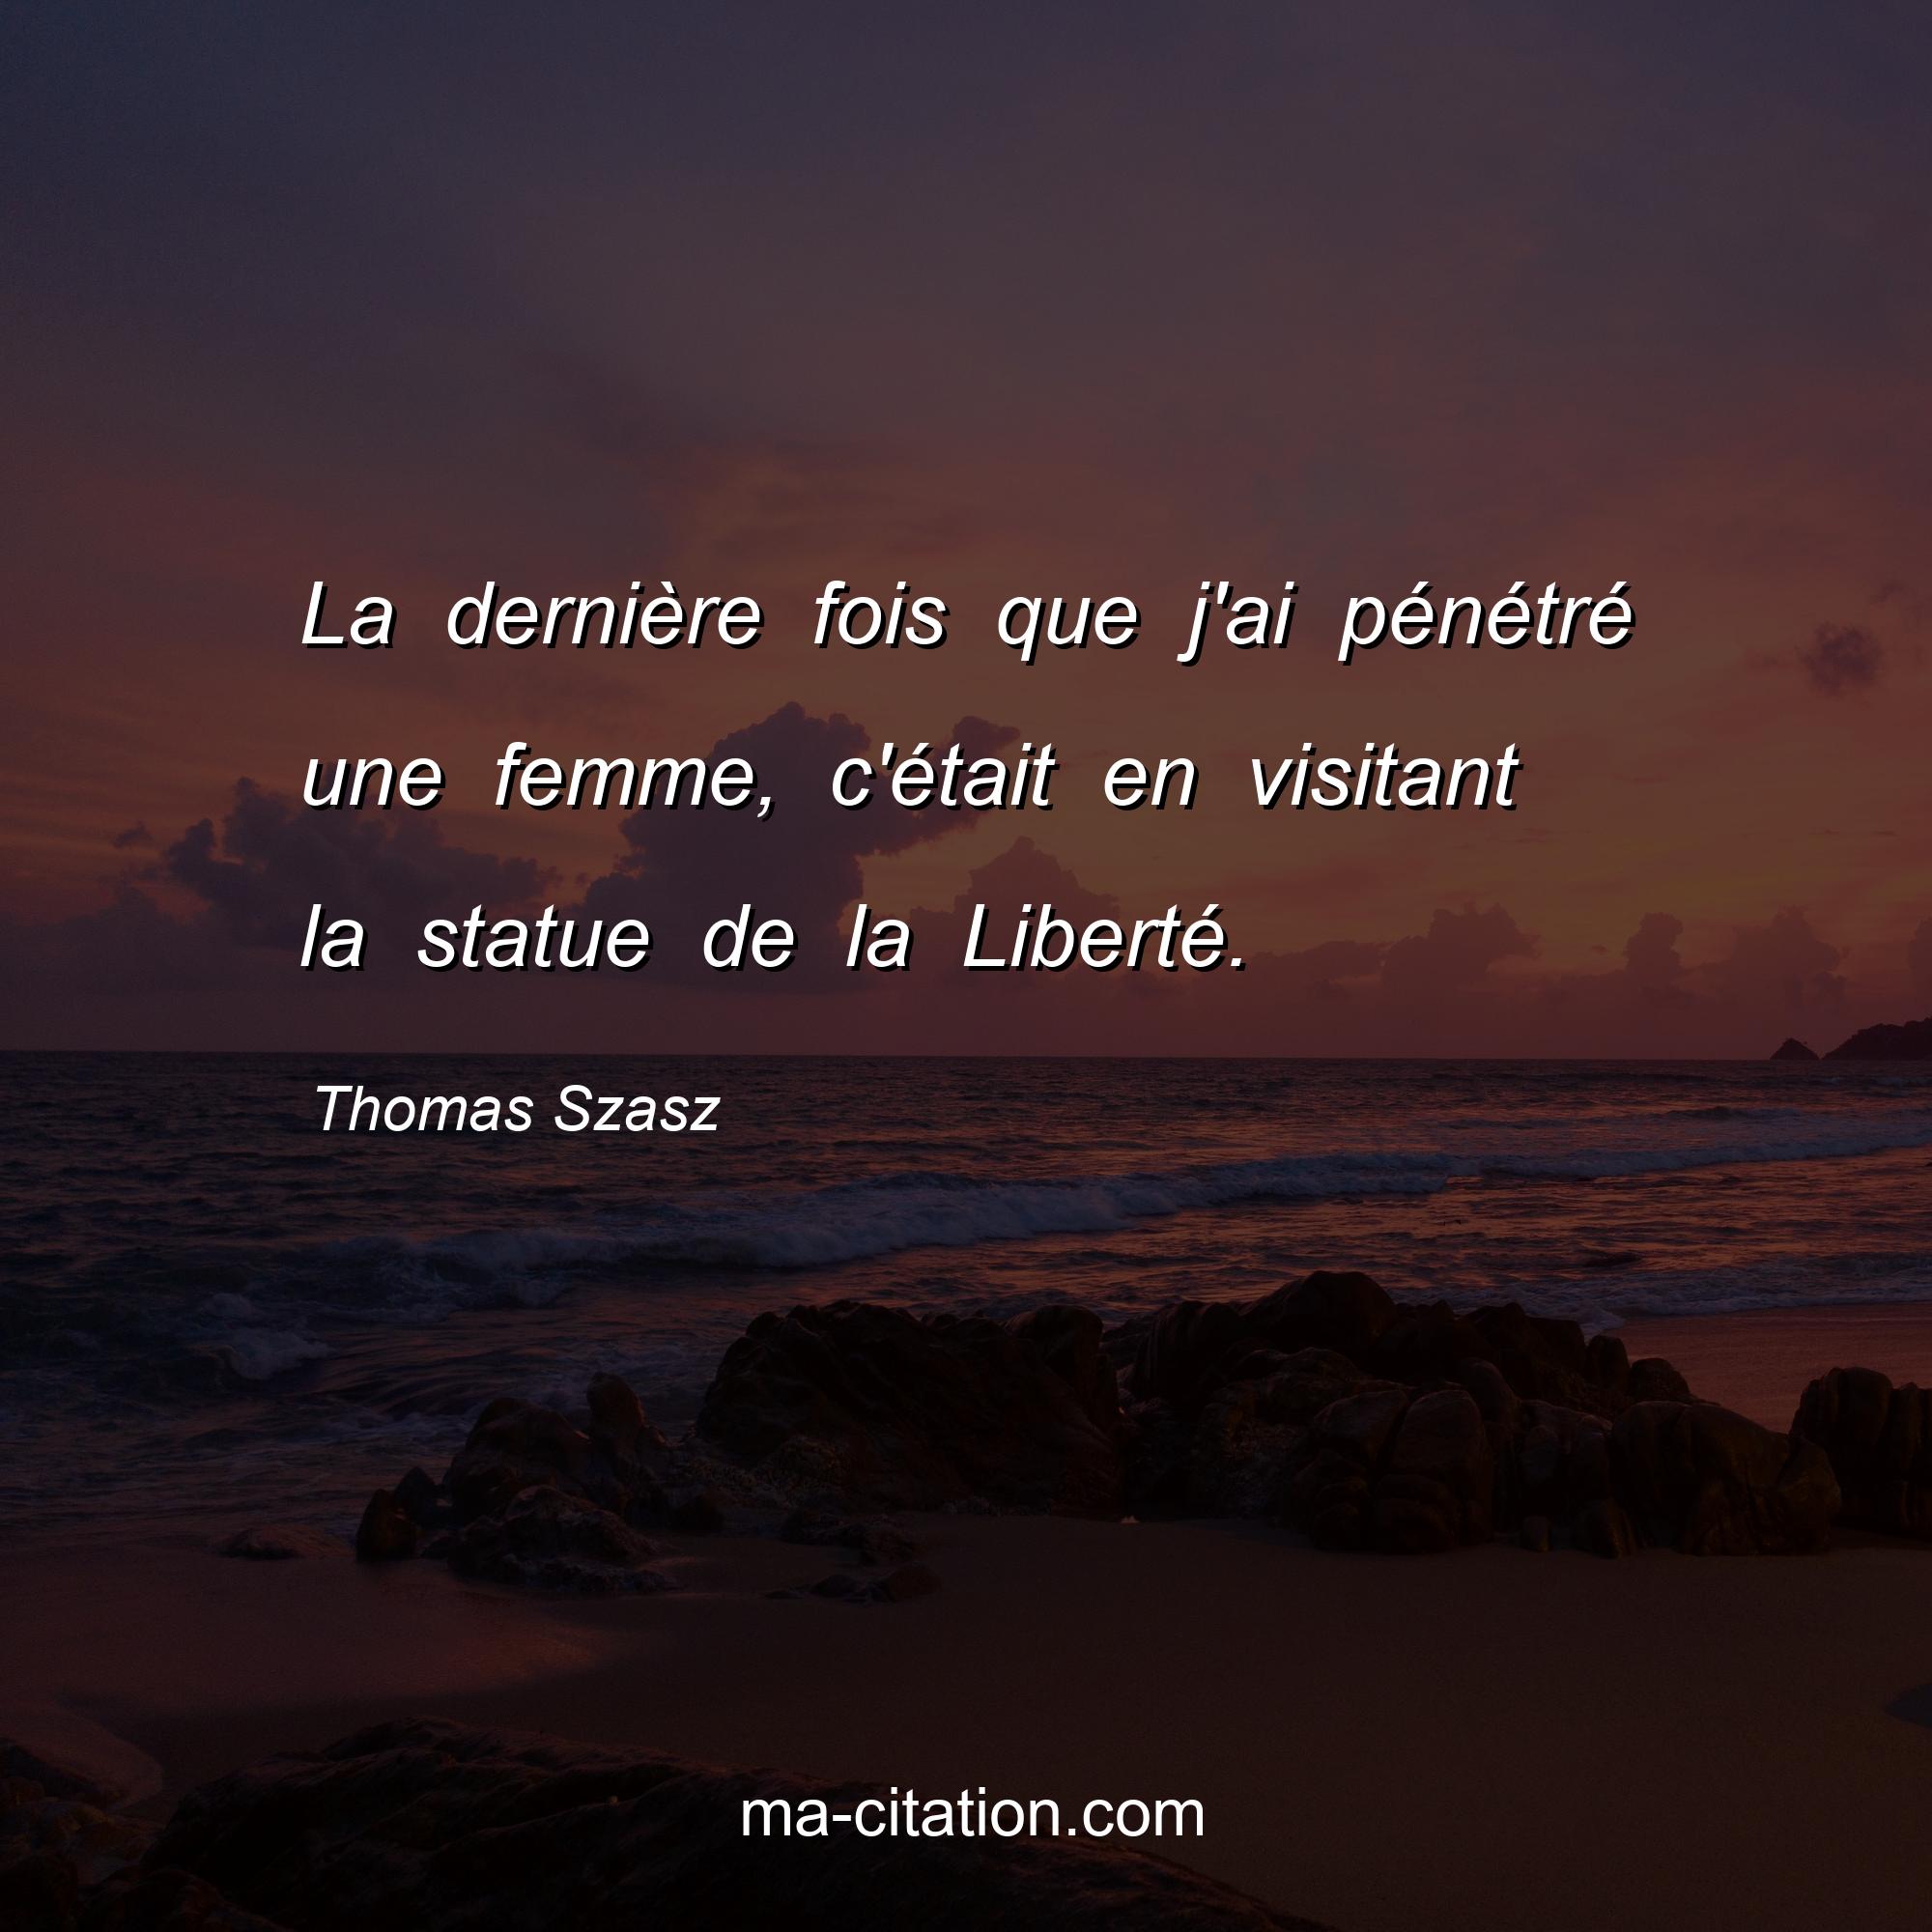 Thomas Szasz : La dernière fois que j'ai pénétré une femme, c'était en visitant la statue de la Liberté.